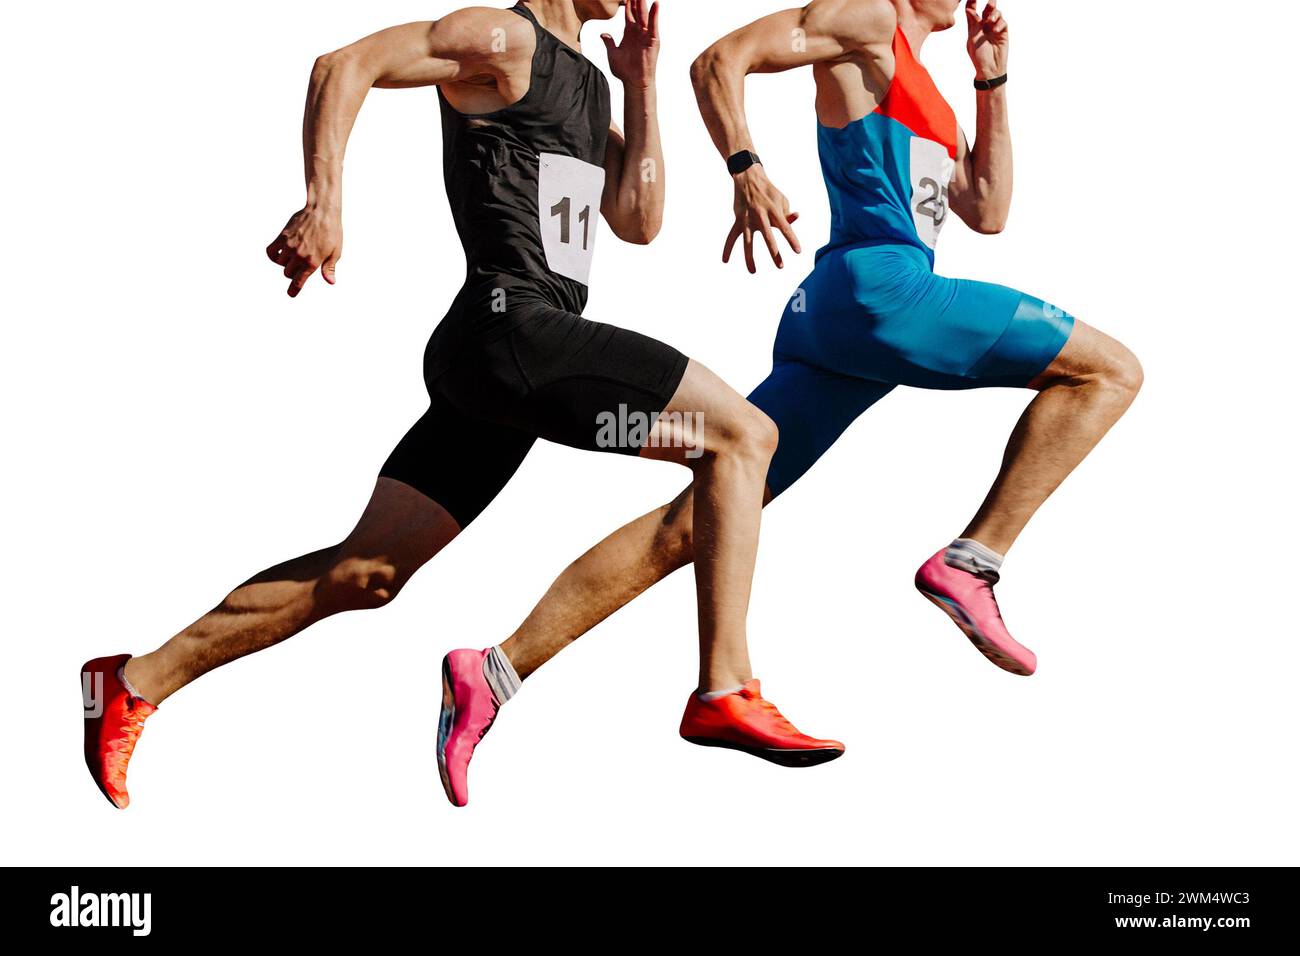 Zwei männliche Athleten sprinten im Stadion, Muskeln gespannt, hart im Wettkampf, isoliert auf weißem Hintergrund Stockfoto